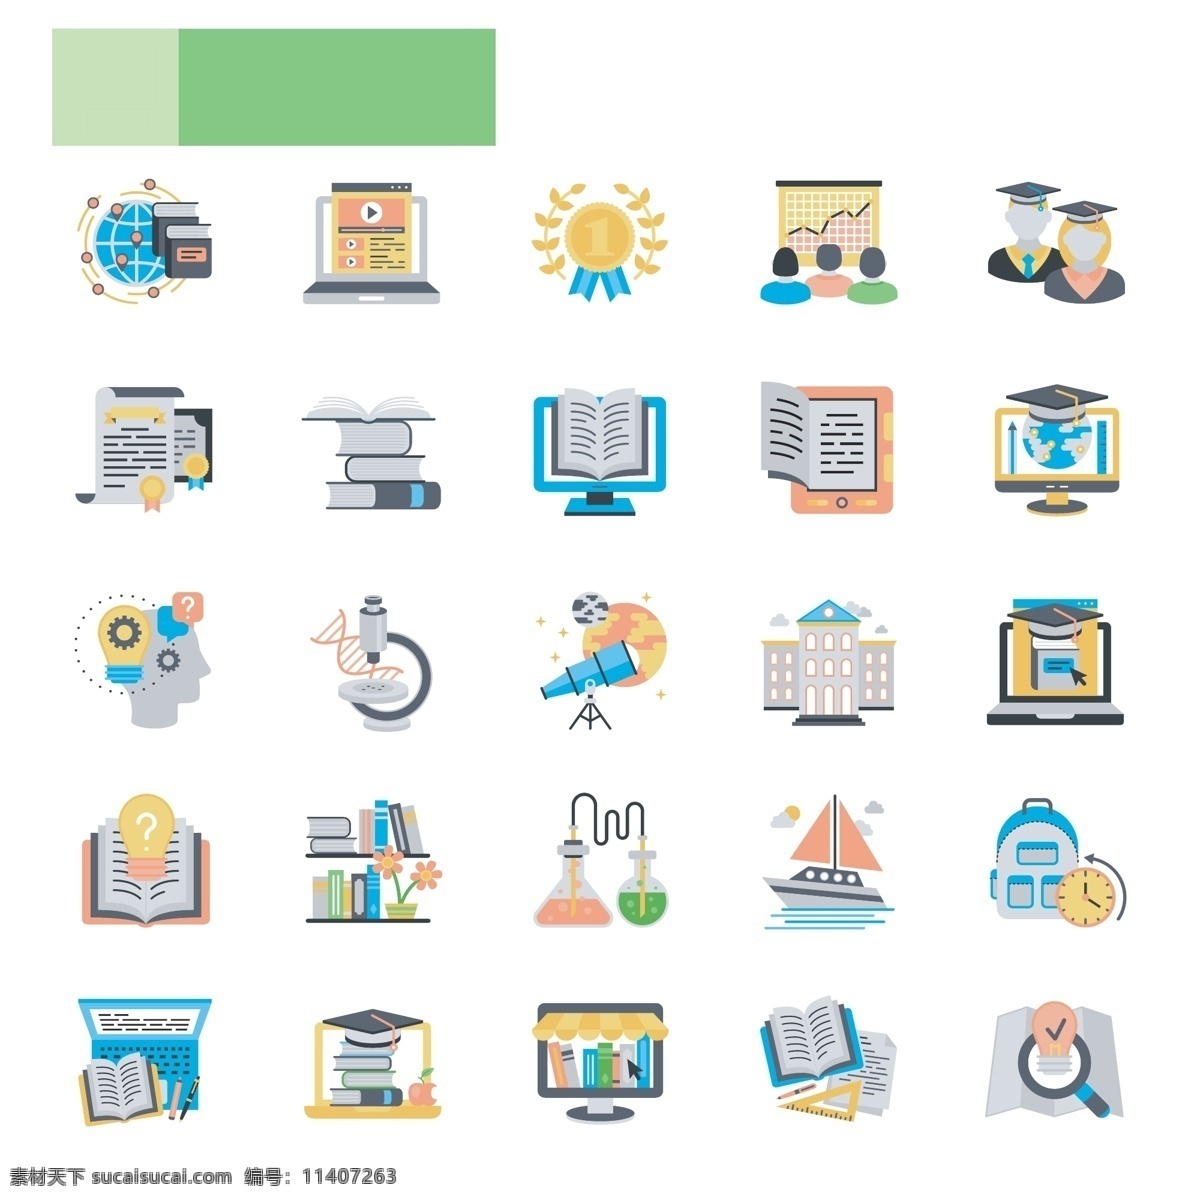 款 色彩 卡通 社会科学 图标 icon 图片列表 互联网 社交 网页界面 简约 创意 插画 媒体 品牌 标识 生活 社会科学图标 icon图标 icon下载